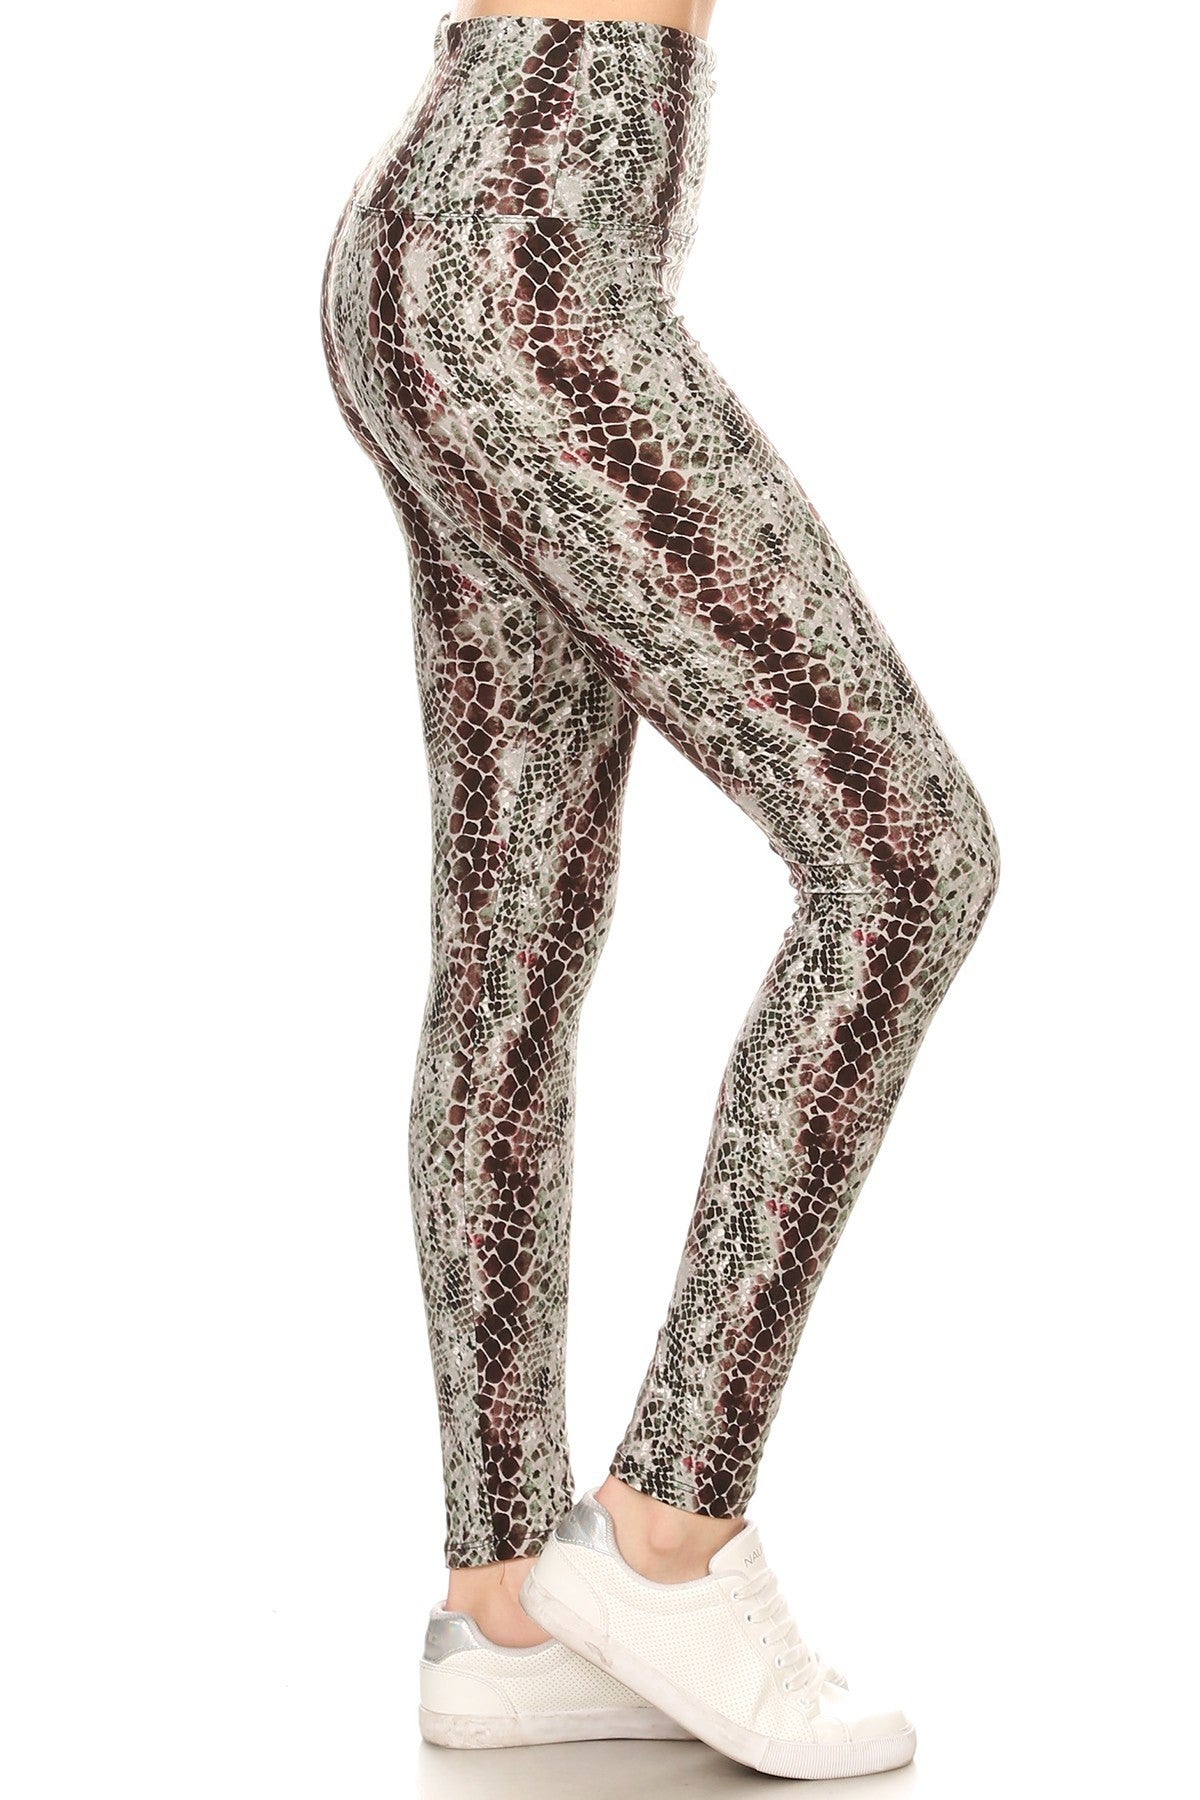 Yoga Snakeskin Printed Women's Knit Legging